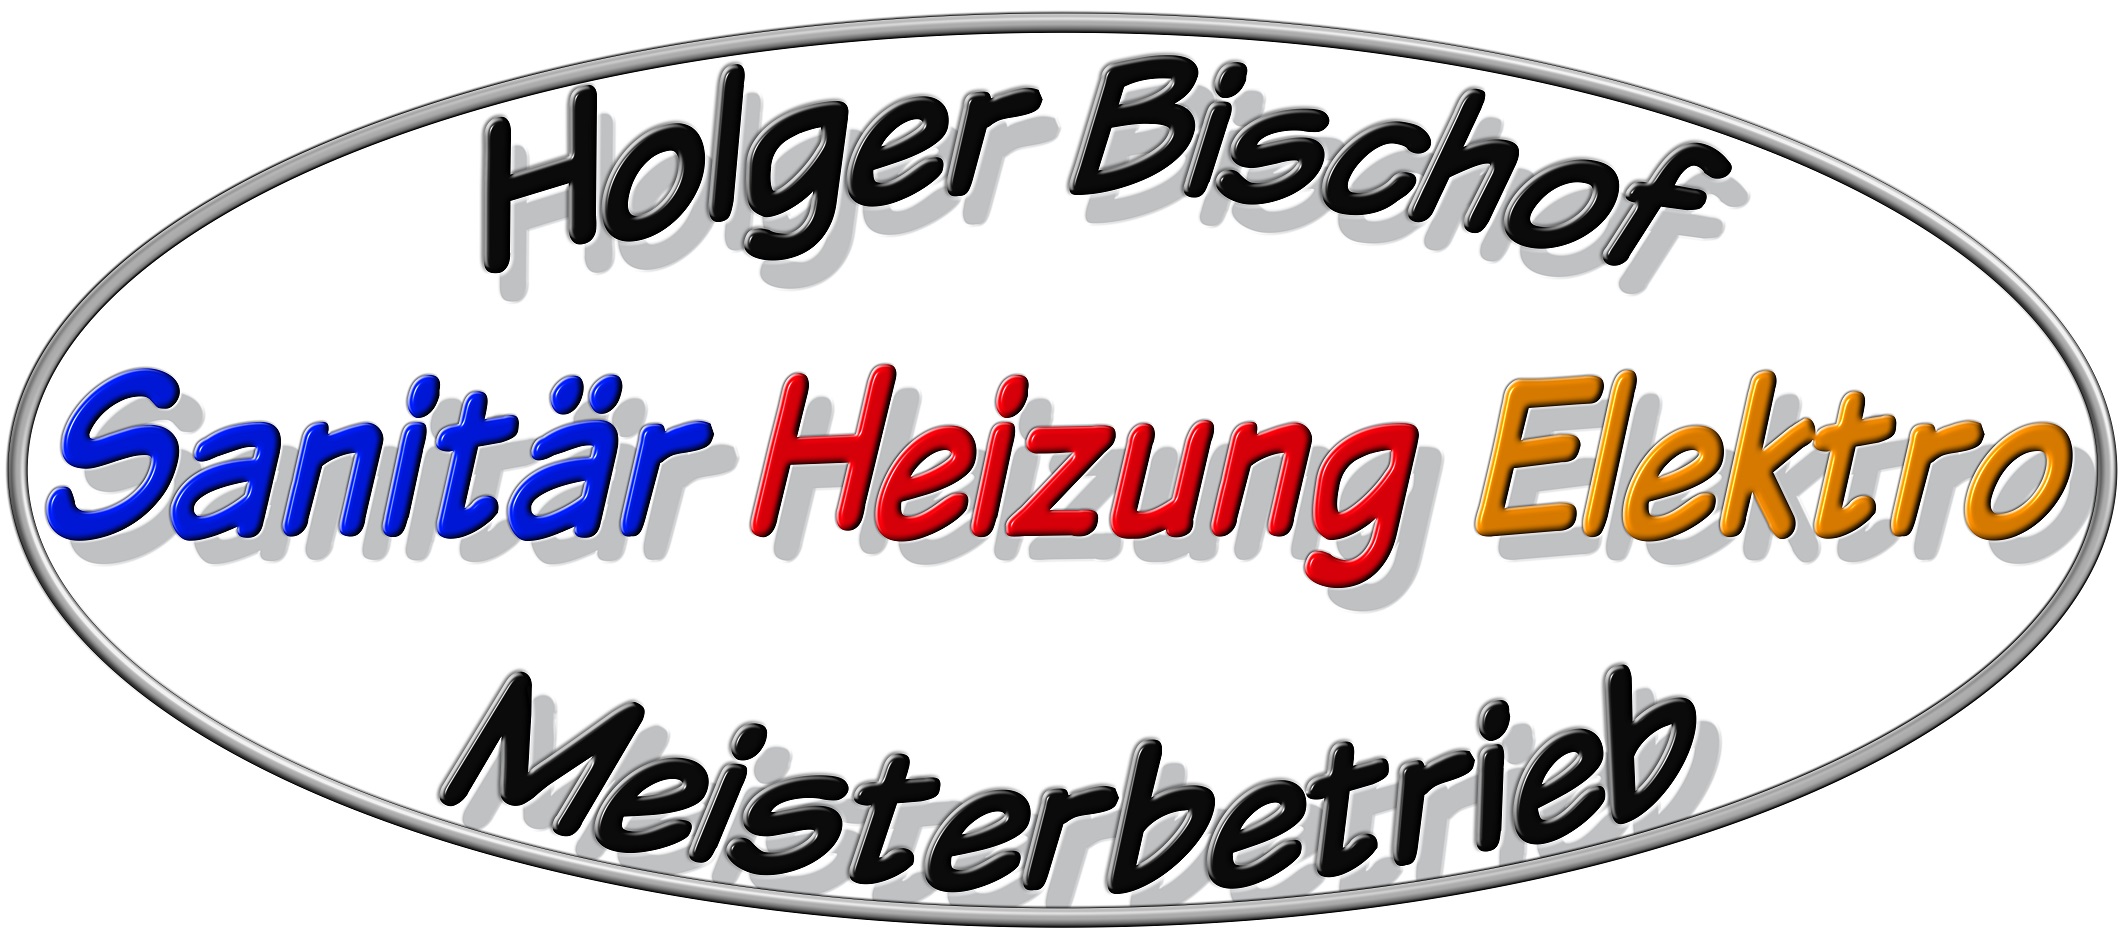 (c) Holgerbischof.de